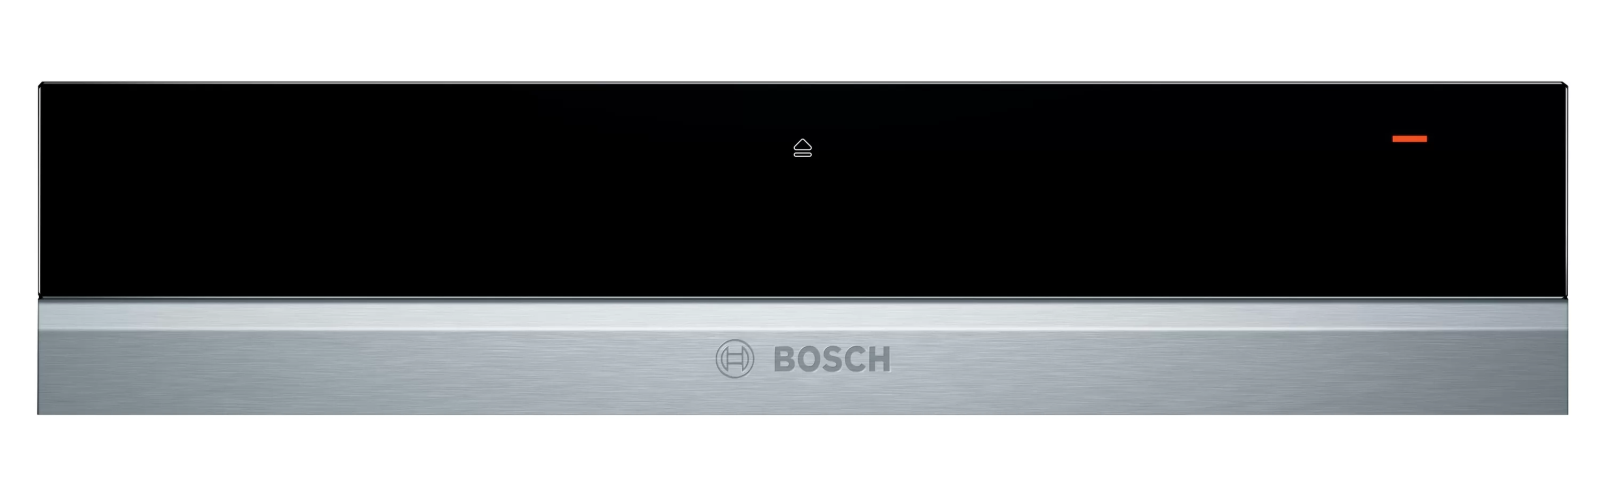 Khay Giữ Ấm Bosch BIC630NS1, Bosch BIC630NS1 Làm Nóng Nhanh, Lâu Dài